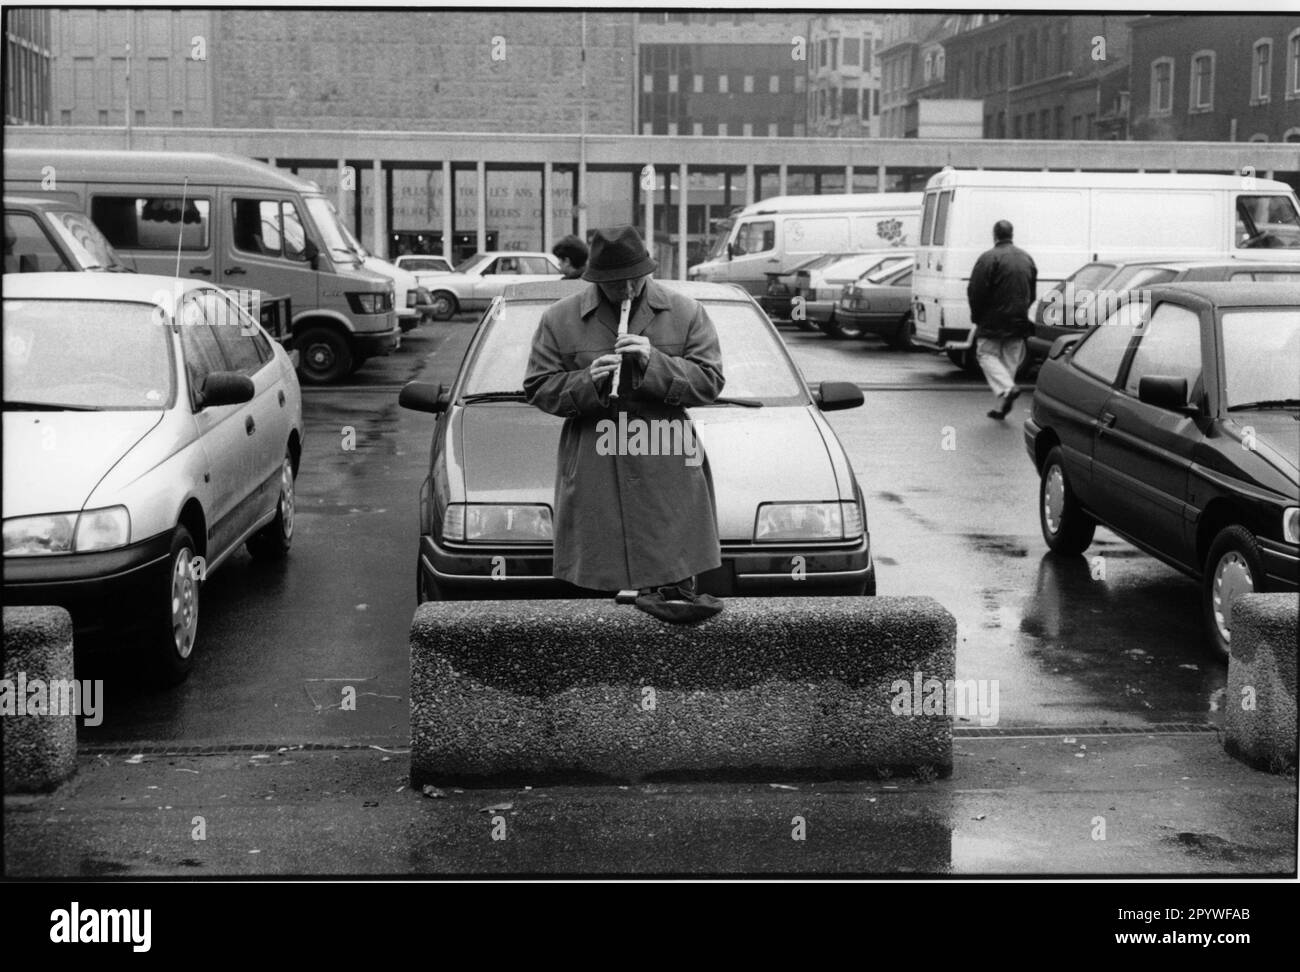 Lüttich (Belgien), Straßenmusik, Flötenspieler. Ein Mann spielt Flöte auf einem Parkplatz. Straßenszene, schwarz-weiß. Foto, 1993. Stockfoto